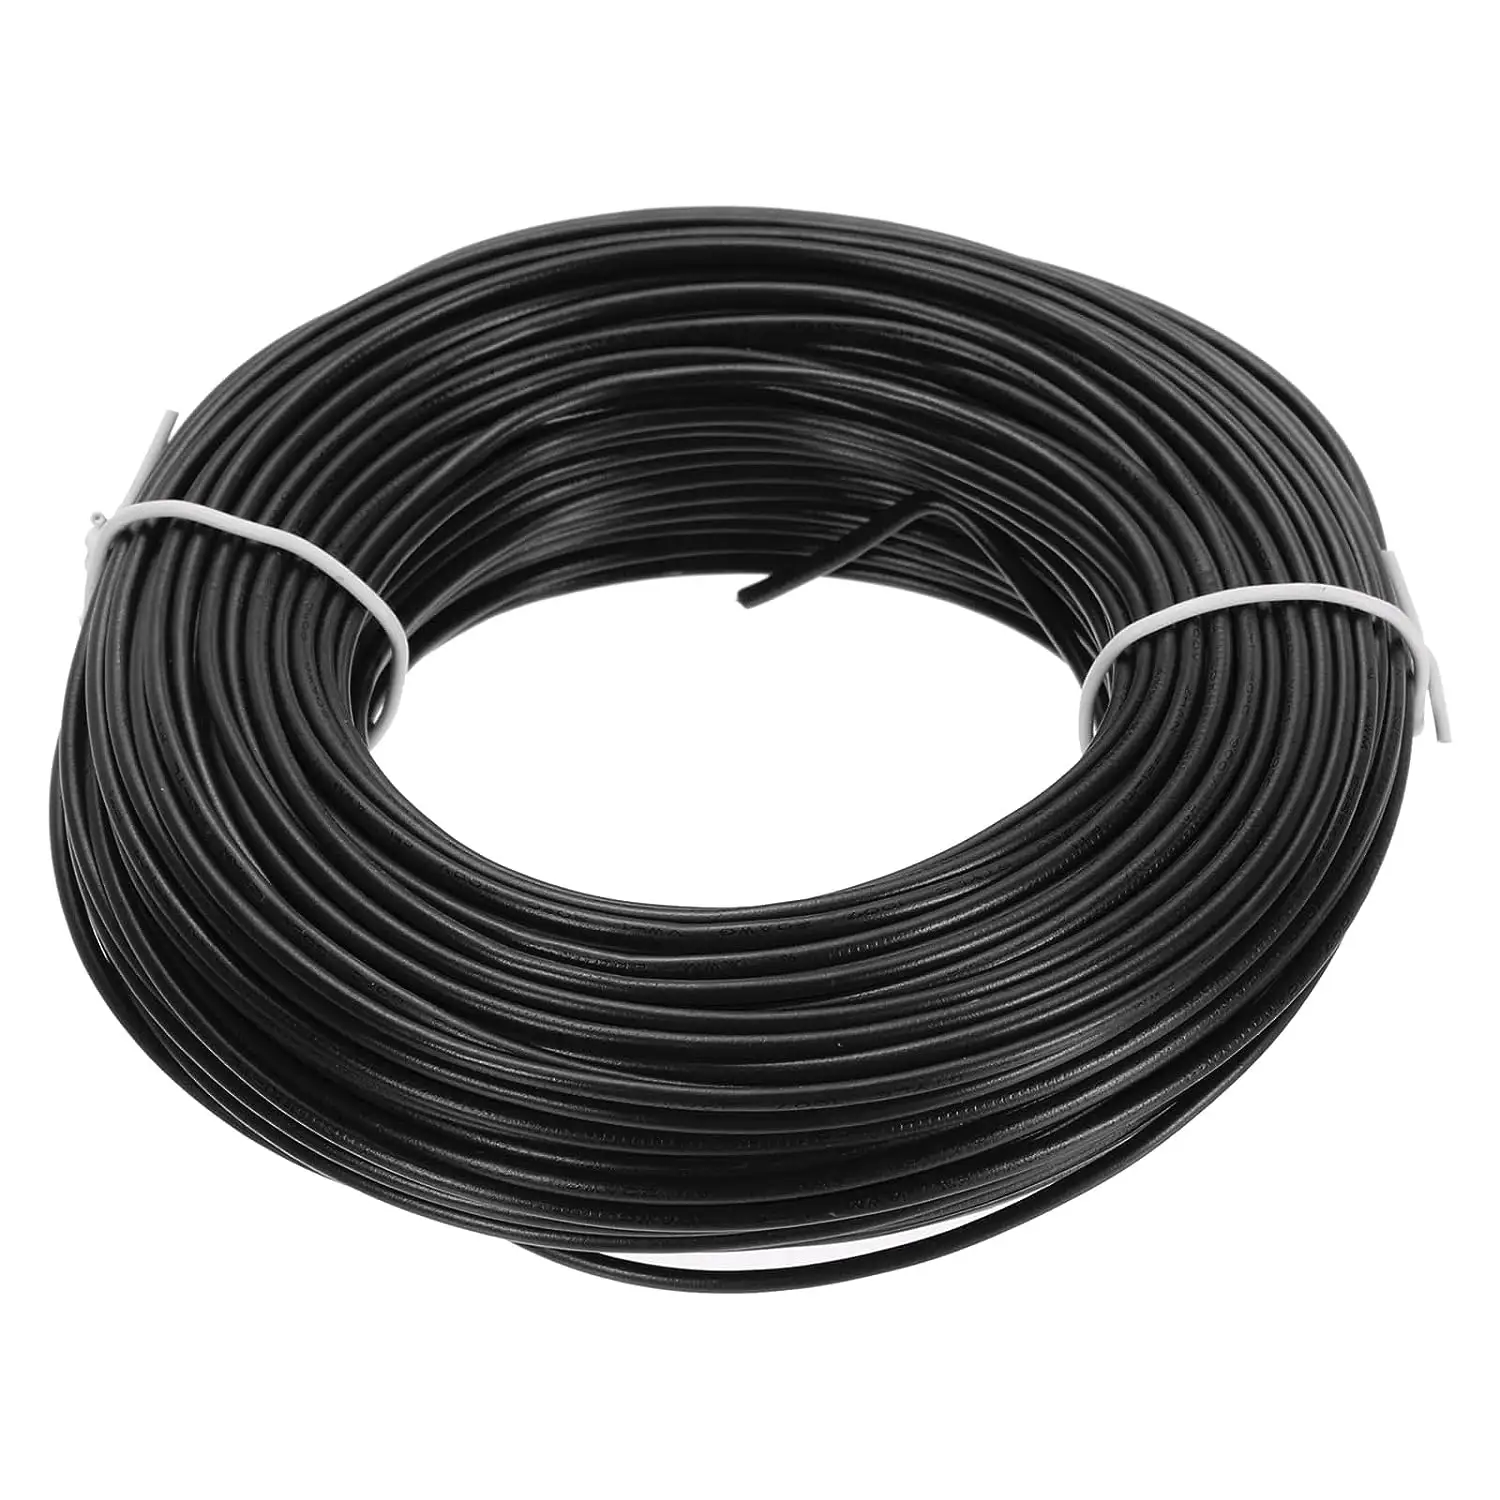 Прямая Продажа с фабрики 16 18 20 22 24 26 28AWG американские стандартные электрические кабели медный ПВХ Электрический кабель